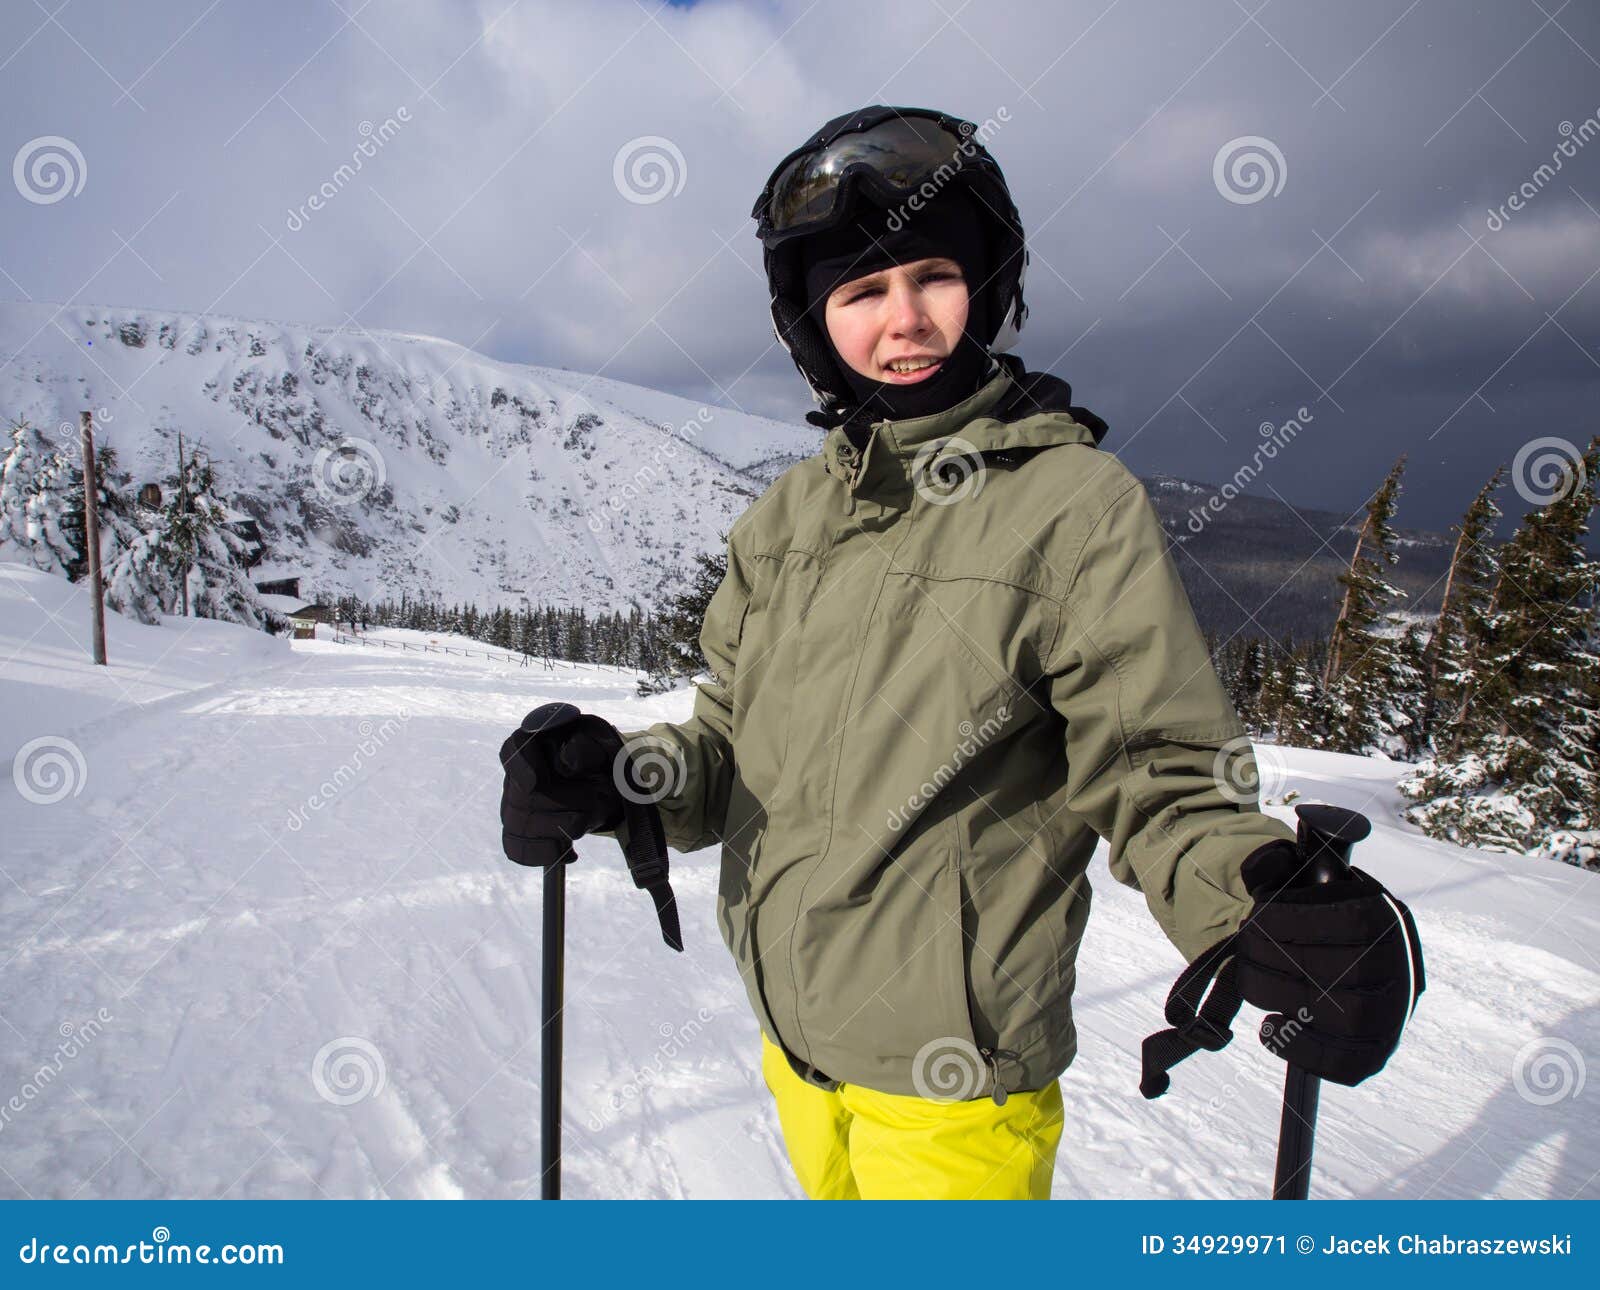 Teenage boy skiing stock image. Image of season, sportive - 34929971